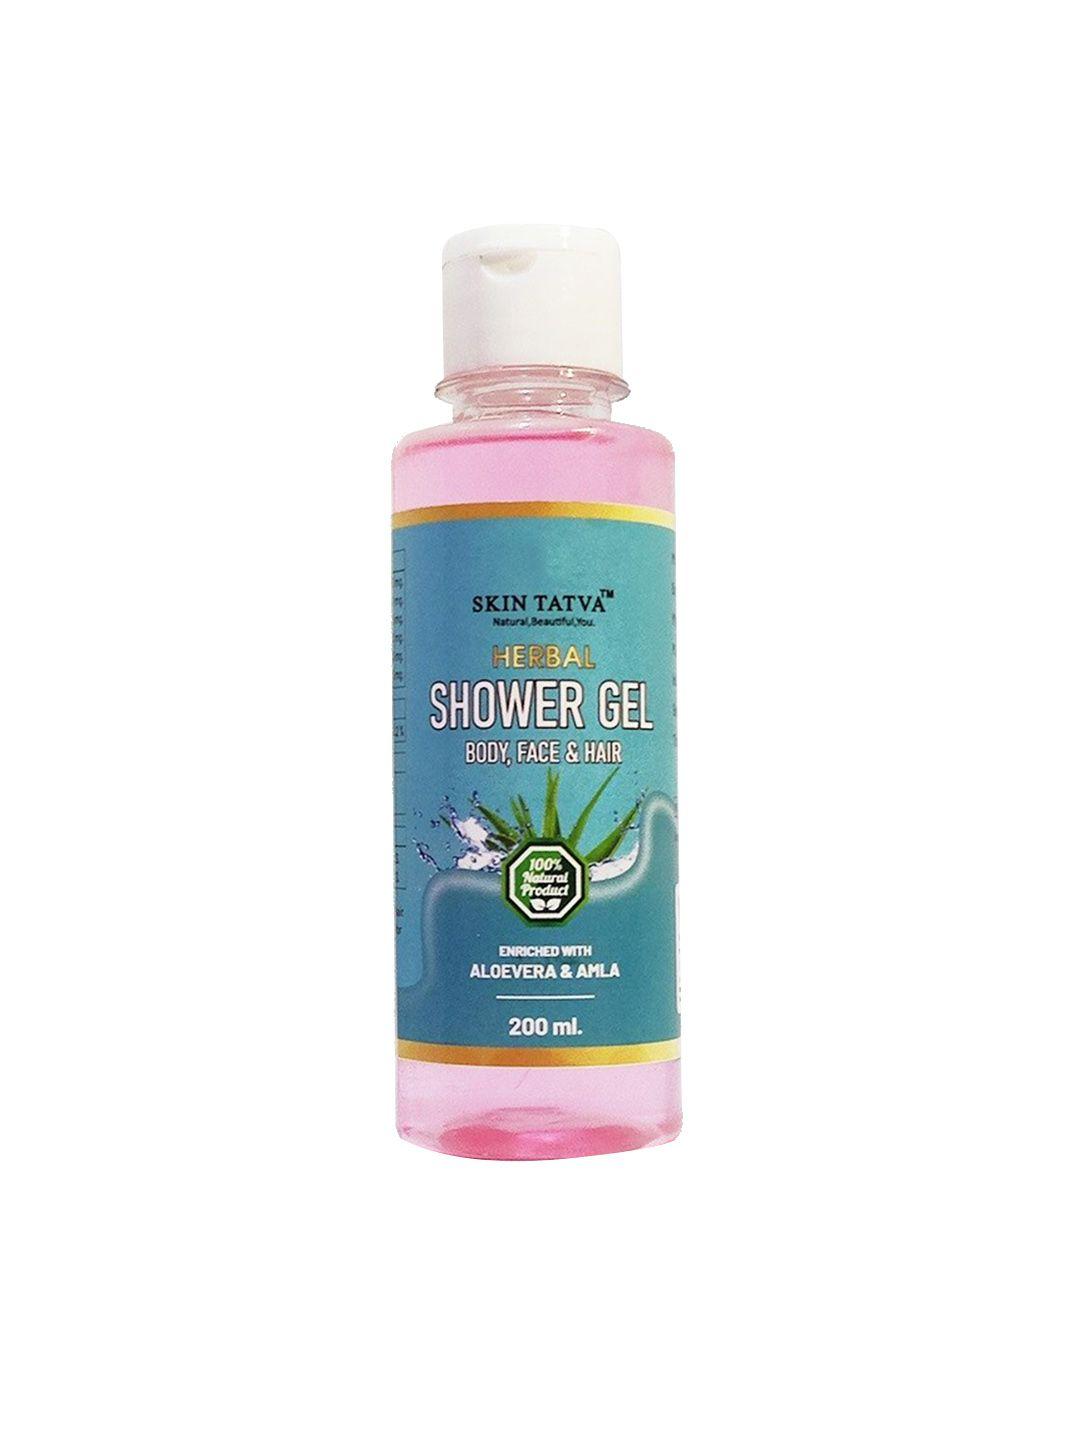 skin tatva herbal shower gel - 200ml